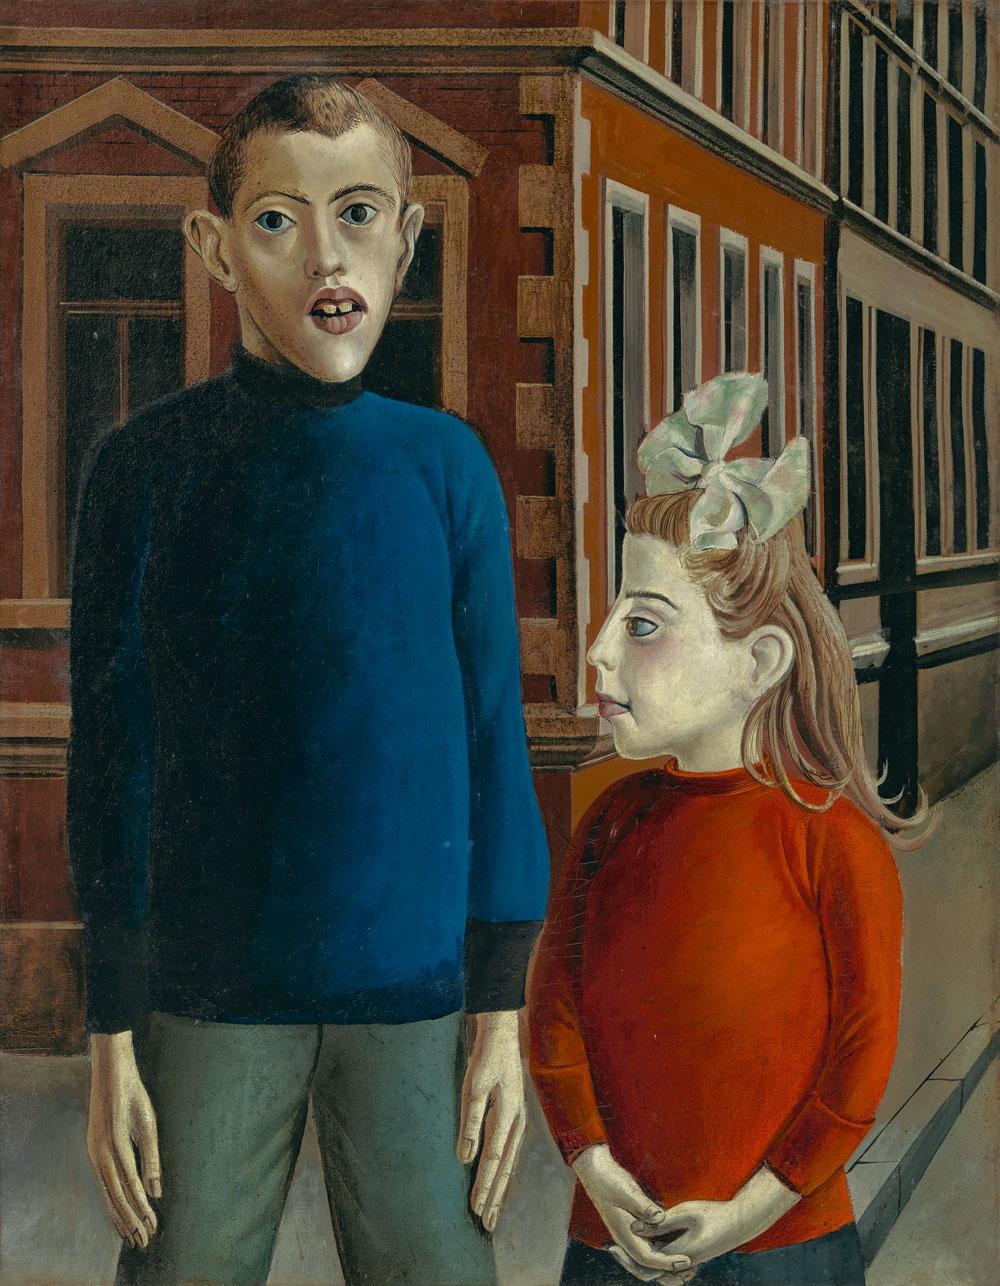 Two Children, Otto Dix, 1921.